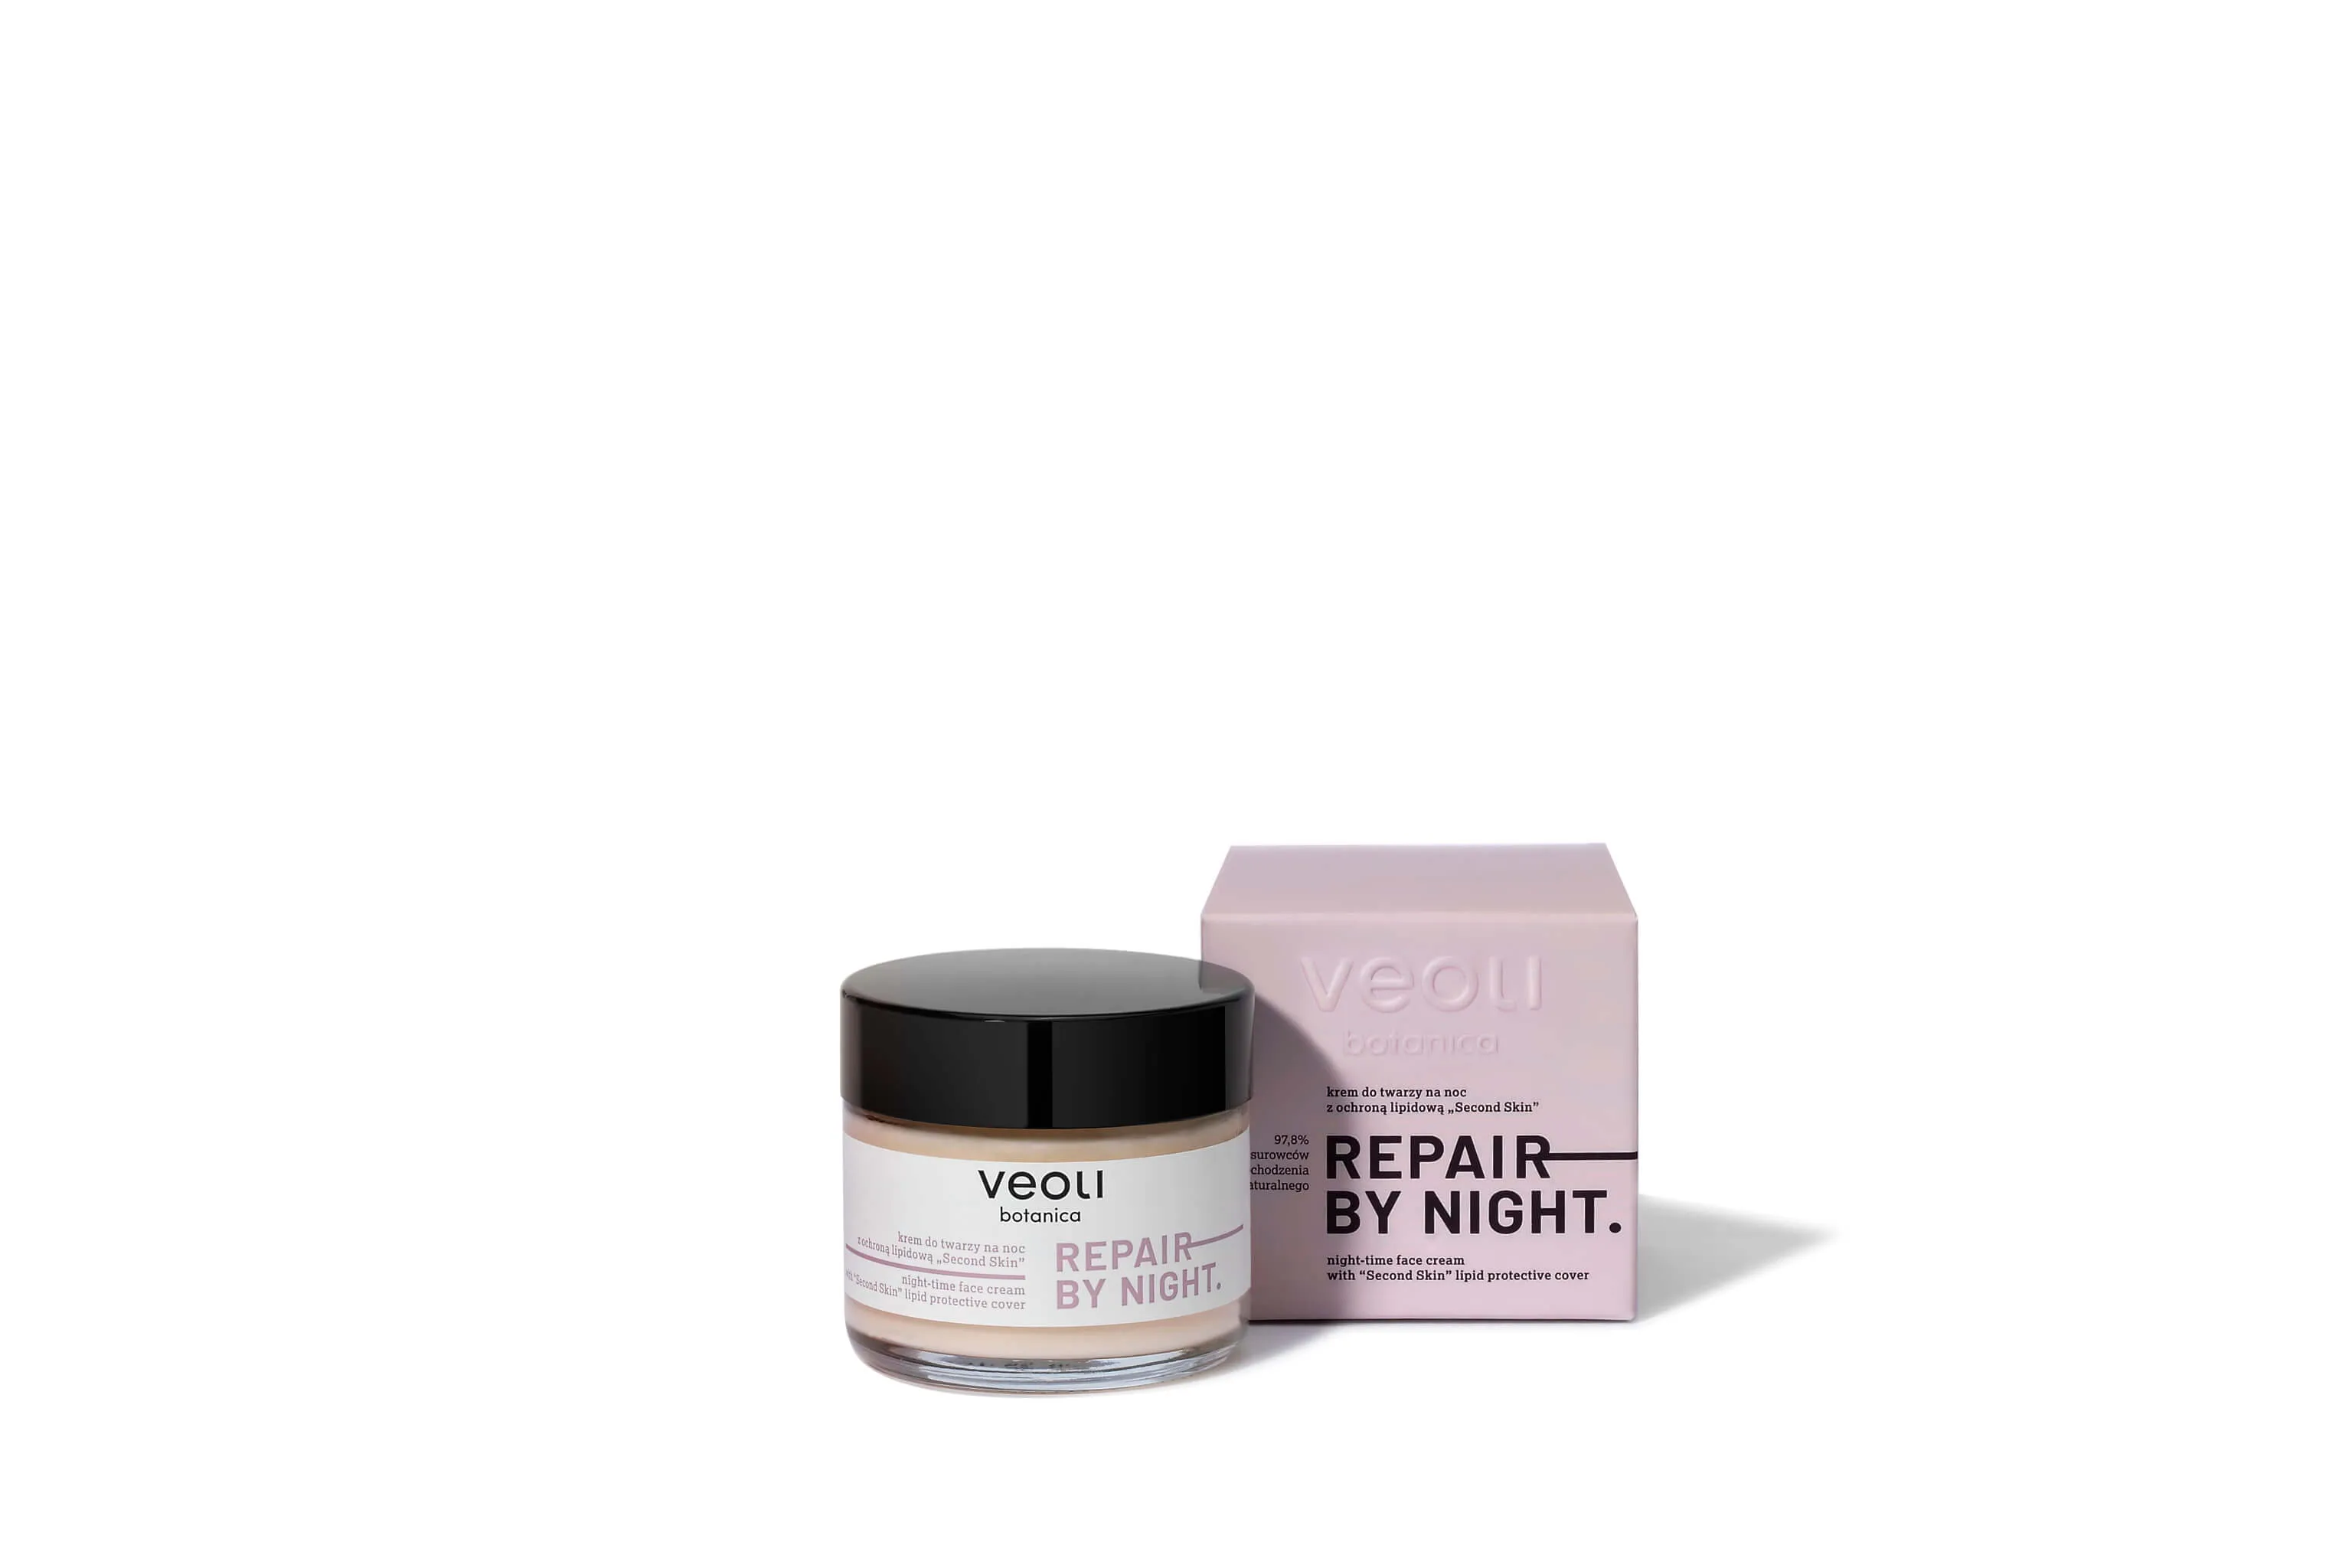 Veoli Botanica Repair By Night, krem do twarzy na noc z ochroną lipidową, 60 ml